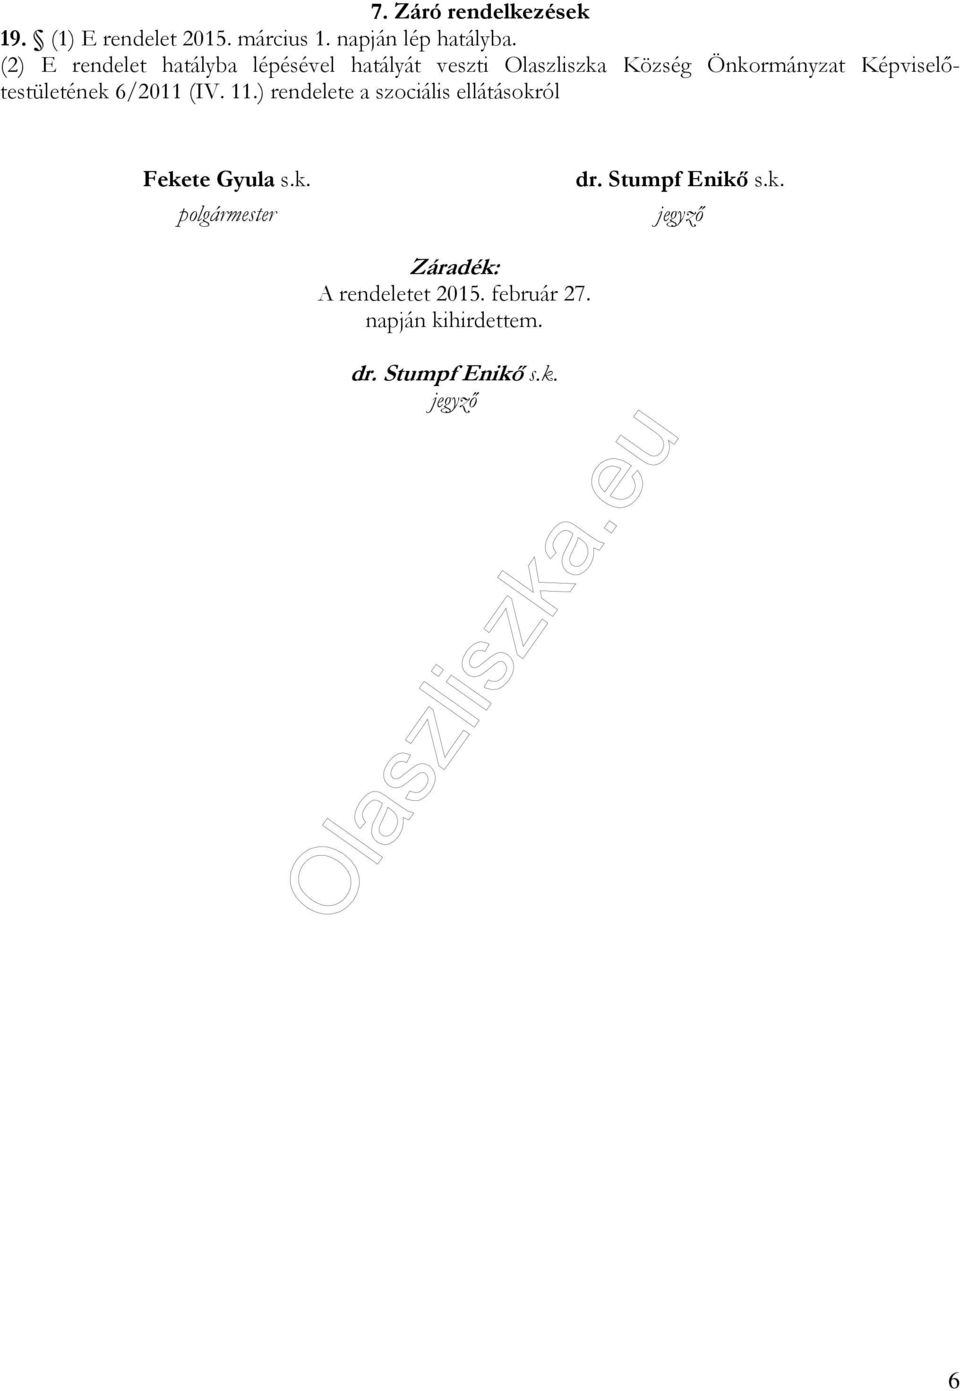 Képviselőtestületének 6/2011 (IV. 11.) rendelete a szociális ellátásokról Fekete Gyula s.k. polgármester dr.